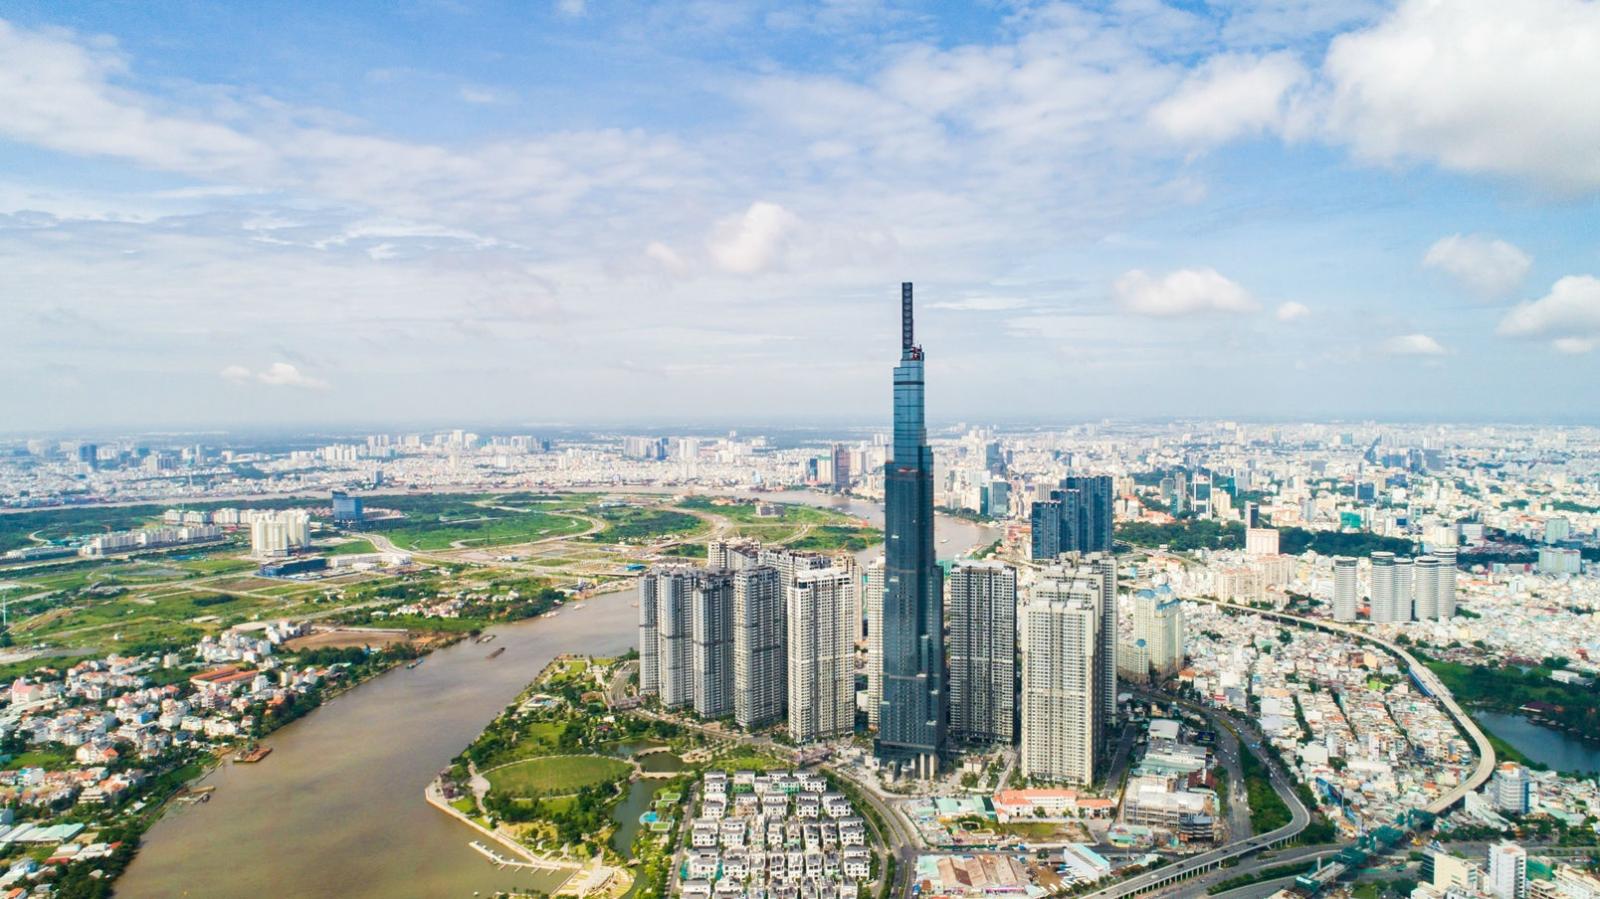 hình ảnh một góc TP.HCM nhìn từ trên cao với tháp 81 tầng, khu dân cư, sông nước